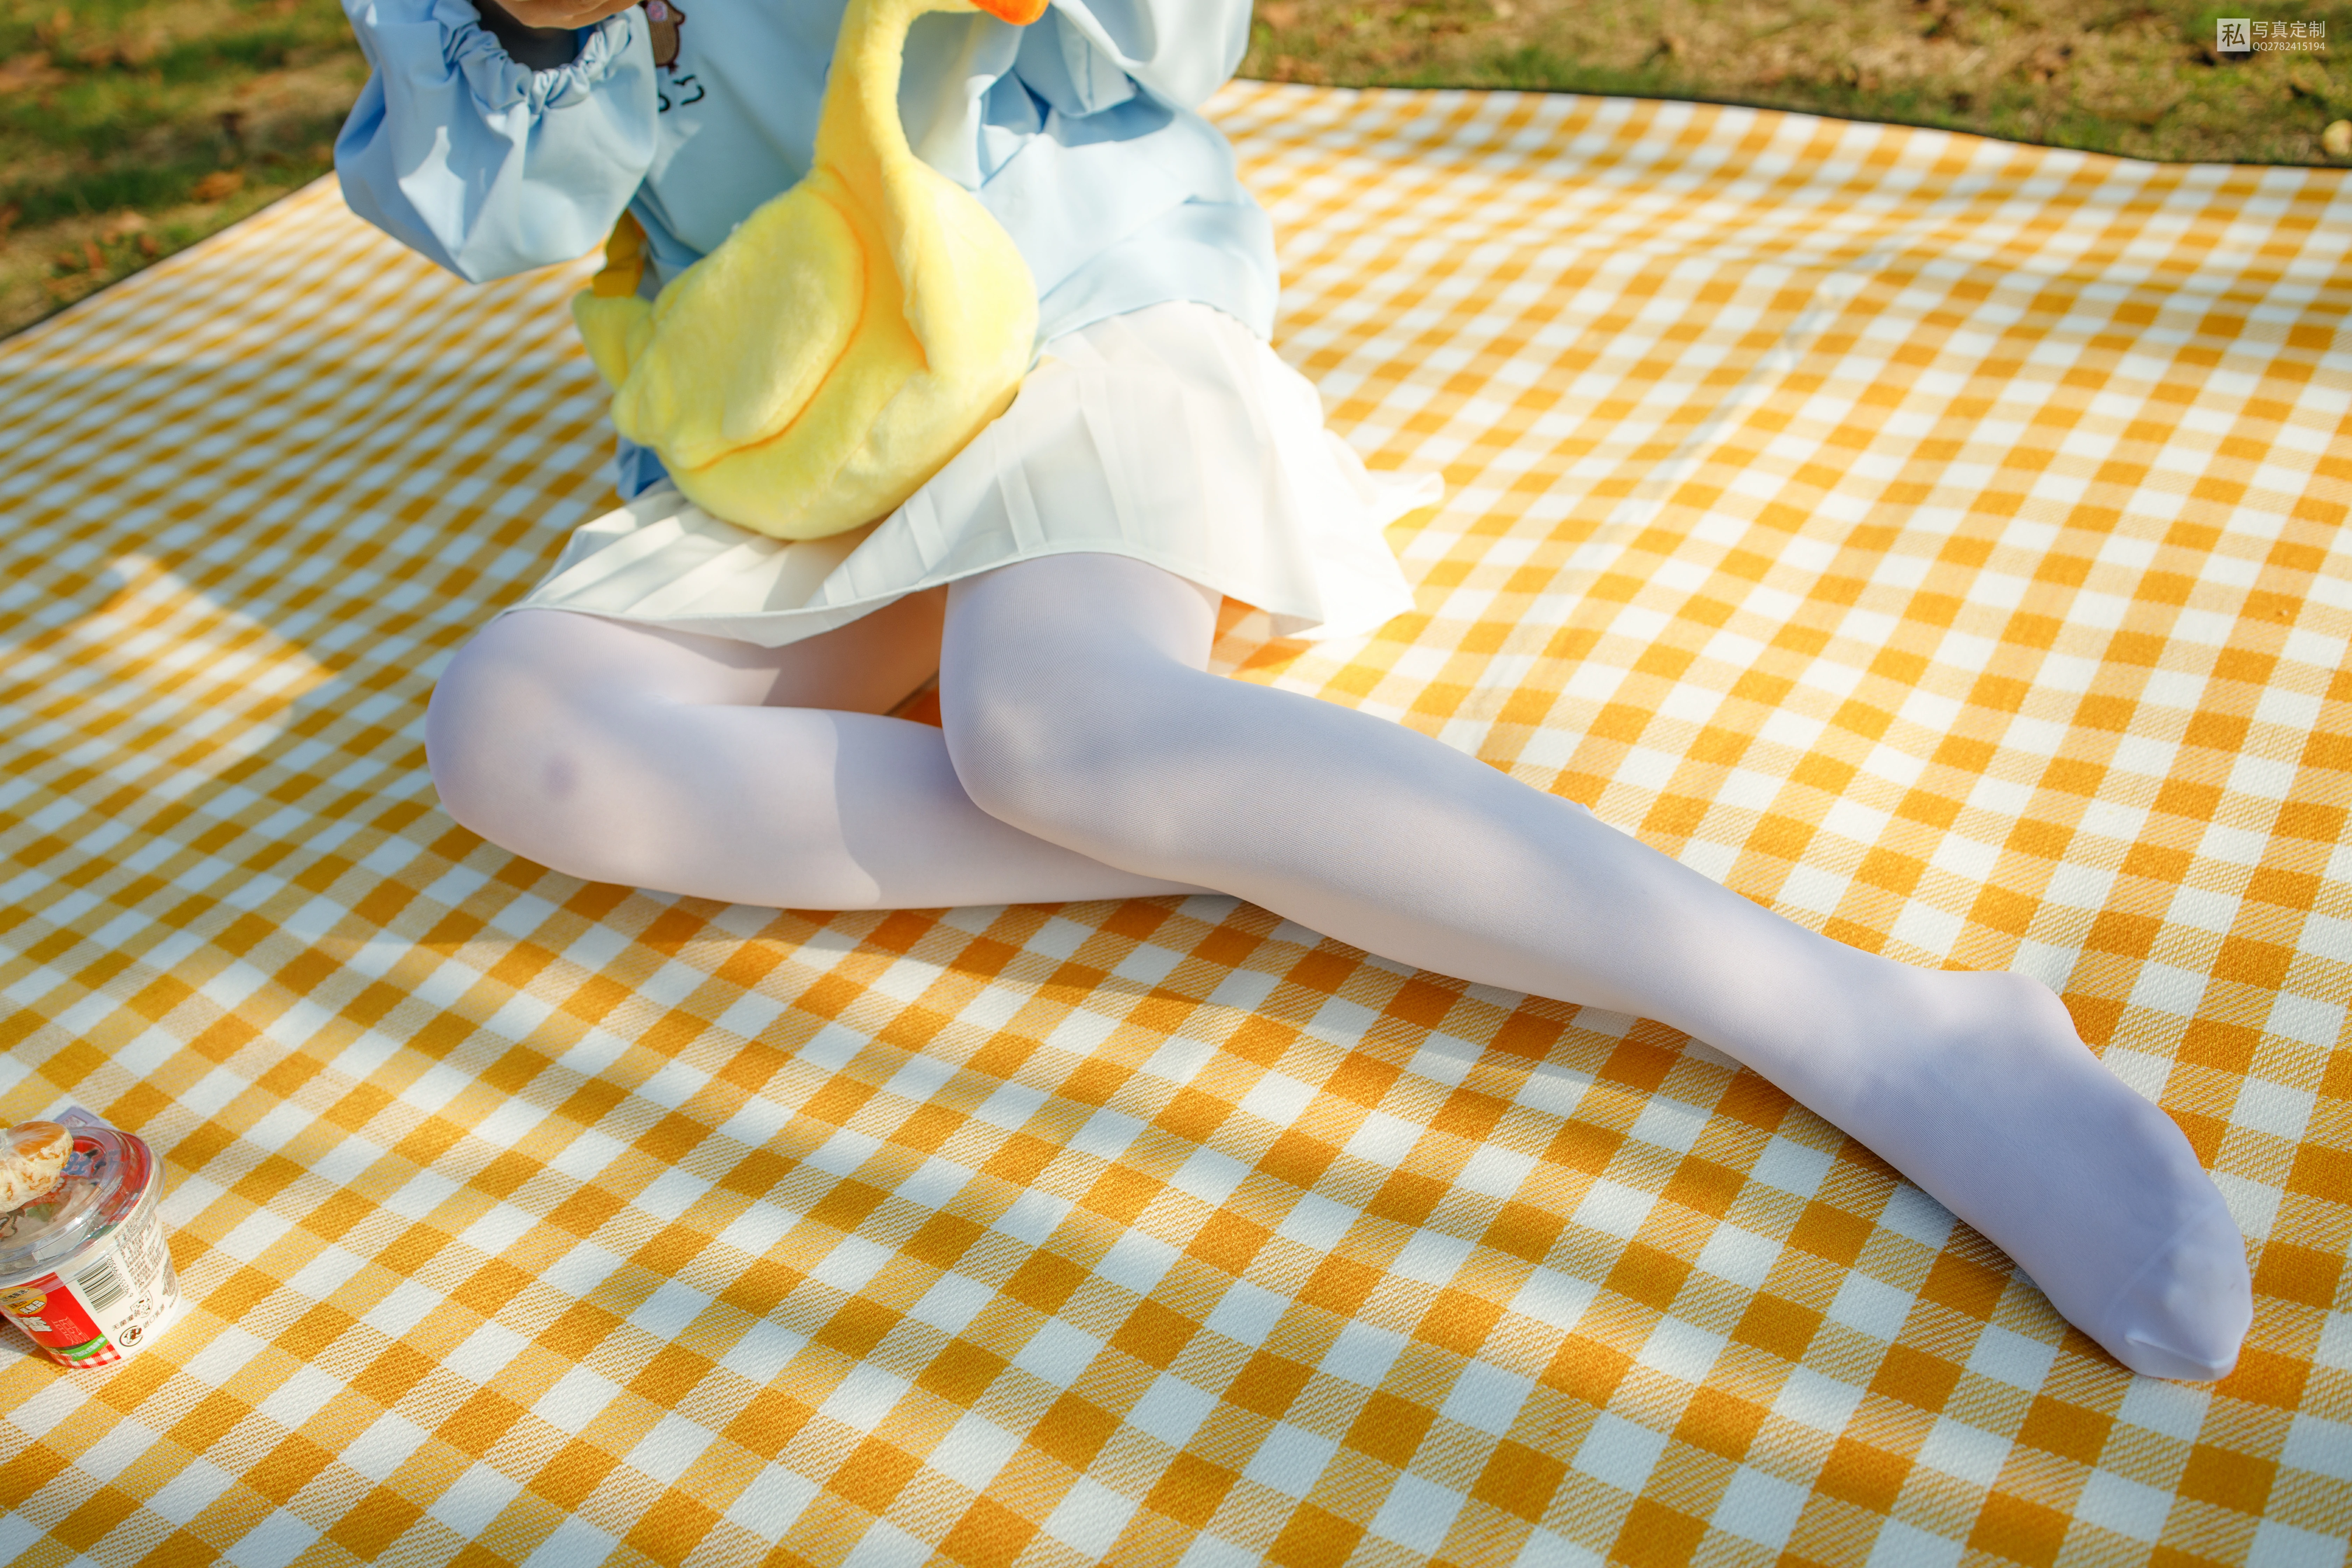 [森萝财团]JKFUN-030《野餐、爆蛋和彩蛋》踩物 白丝50D 默陌 白色短裙加白色丝袜美腿性感私房写真集,